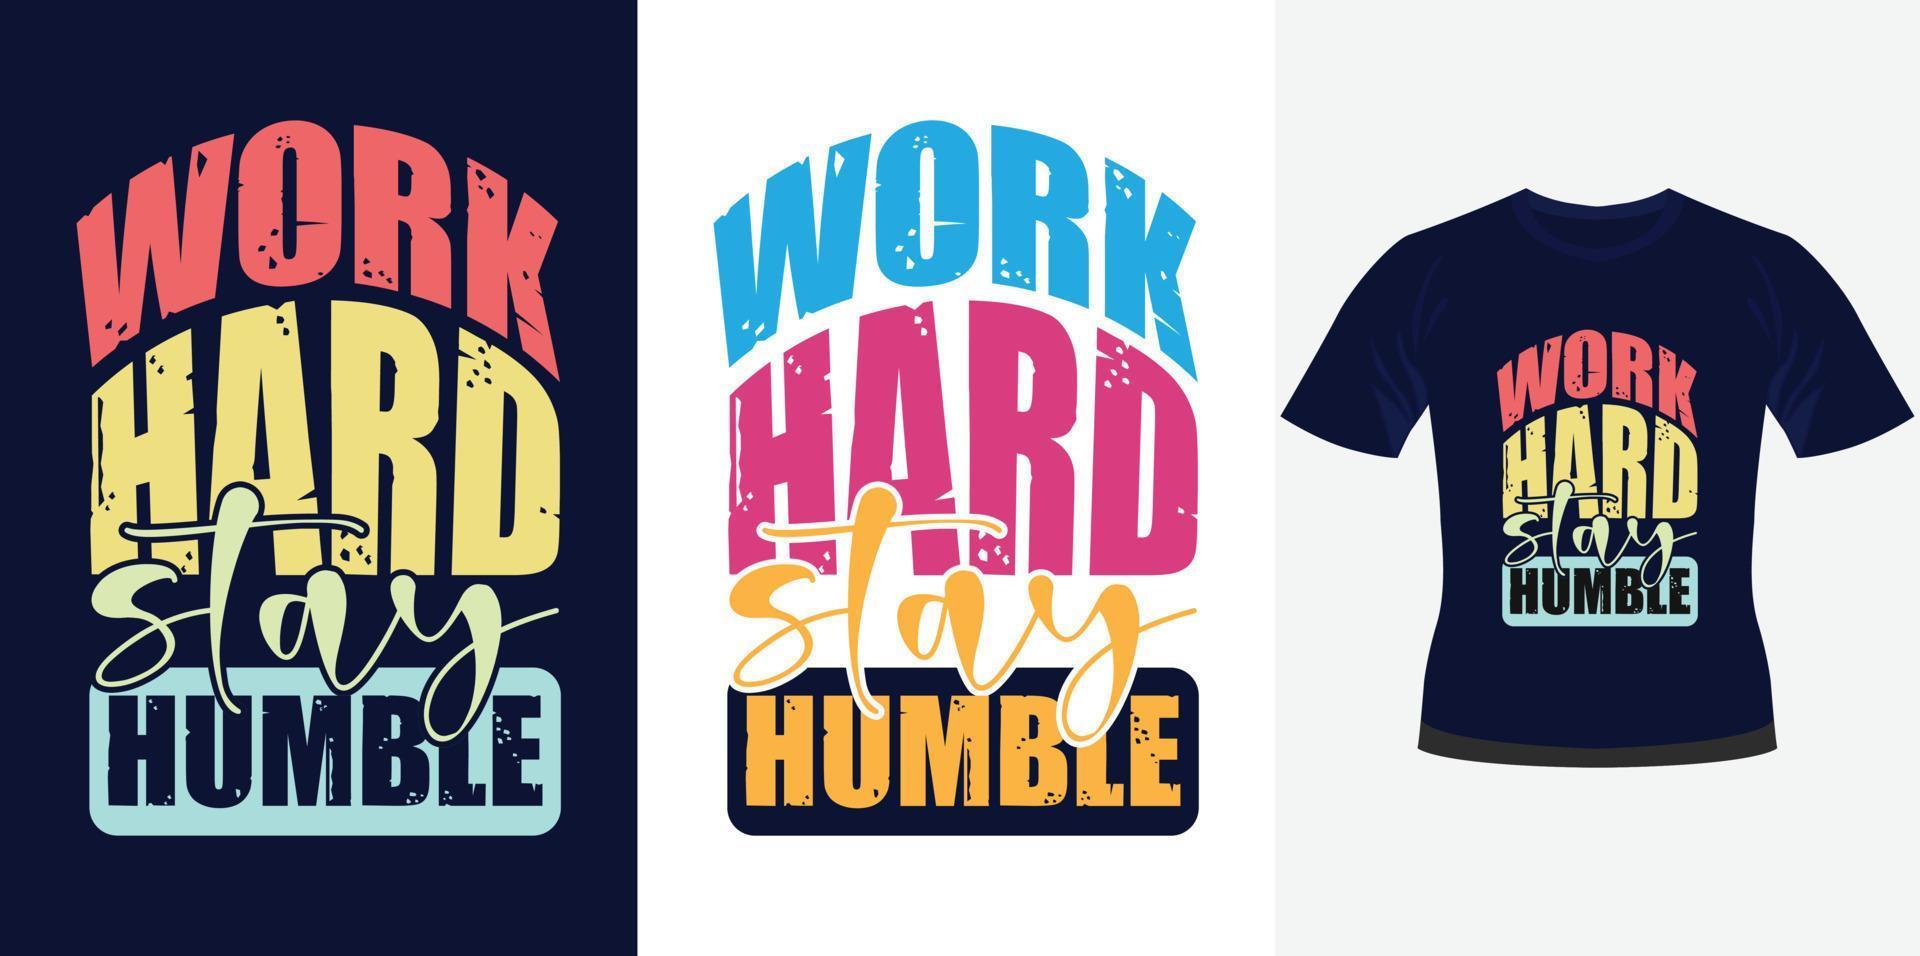 trabaje duro, manténgase humilde, diseño de tipografía motivacional de moda para la impresión de camisetas vector